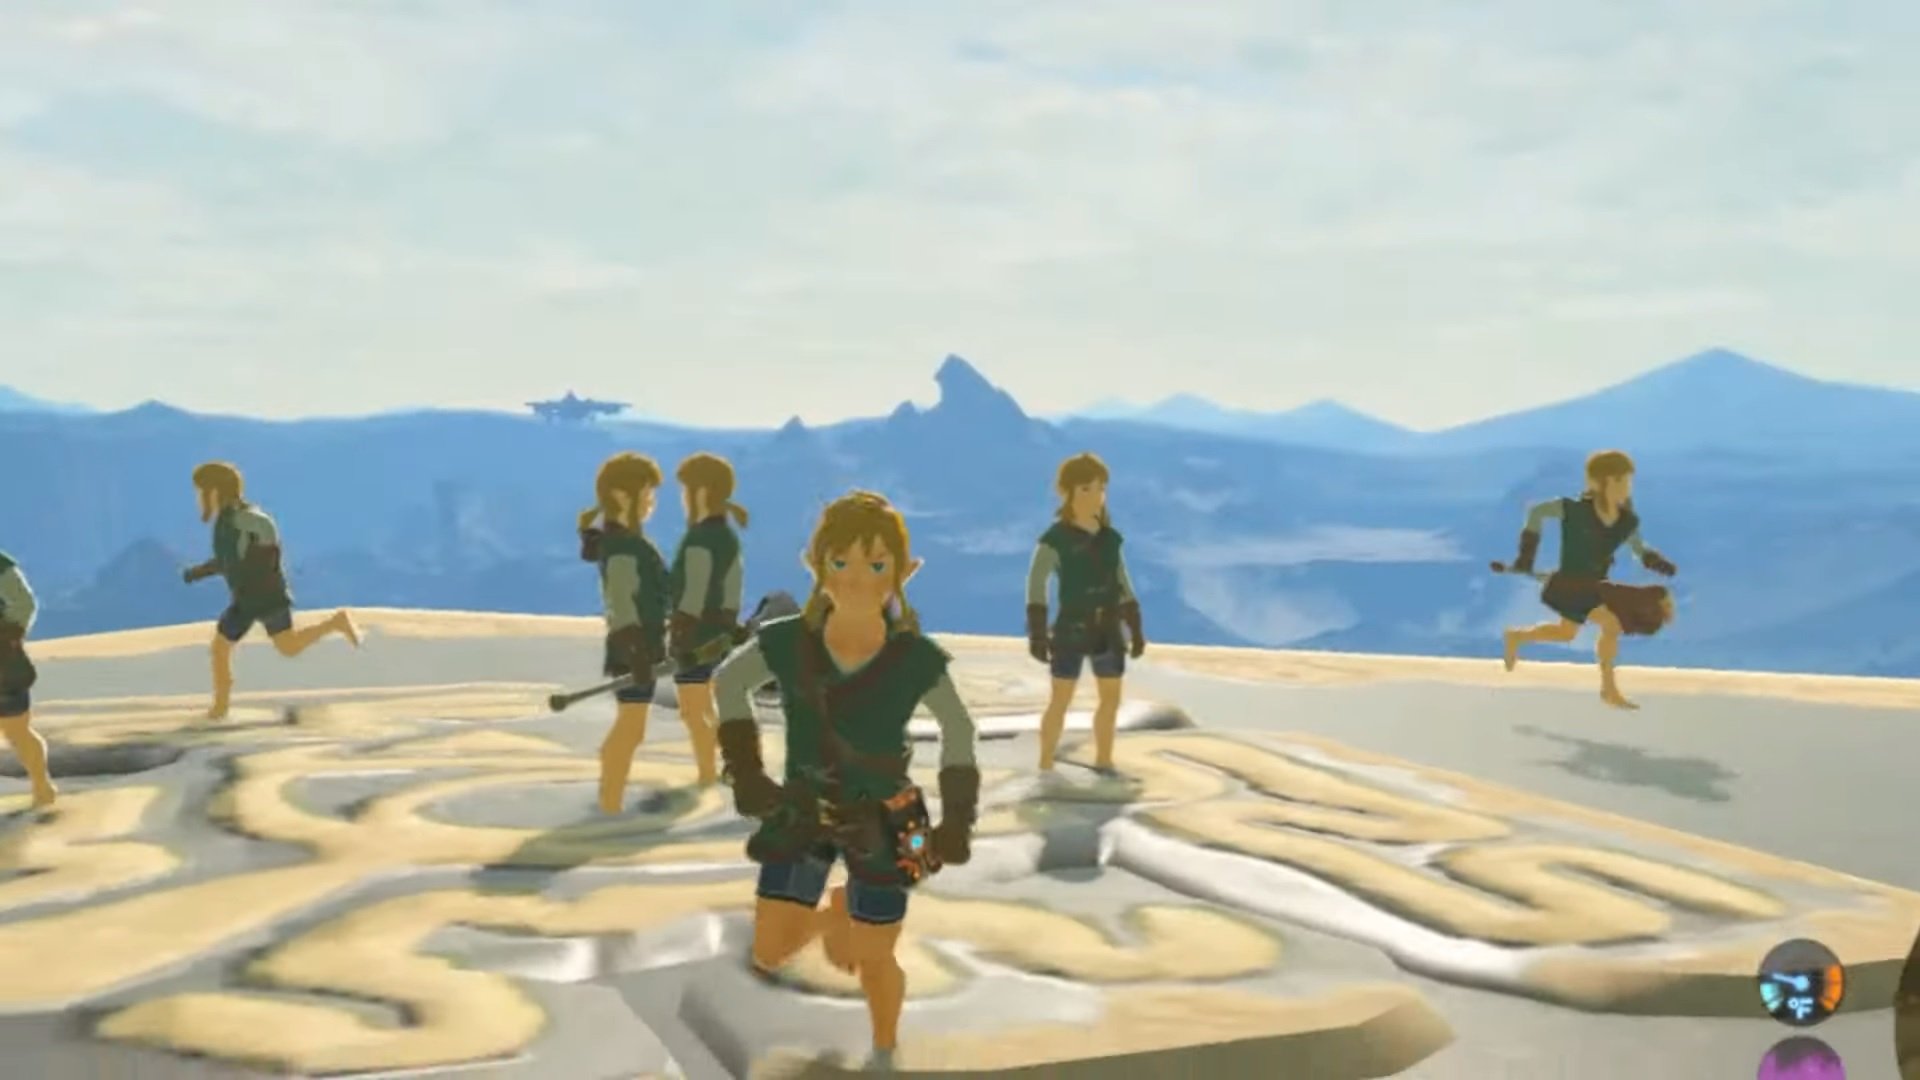 ม็อด Multiplayer ของ The Legend of Zelda: Breath of the Wild เสร็จแล้ว สนุกในโลกกว้างไปกับเพื่อน ๆ